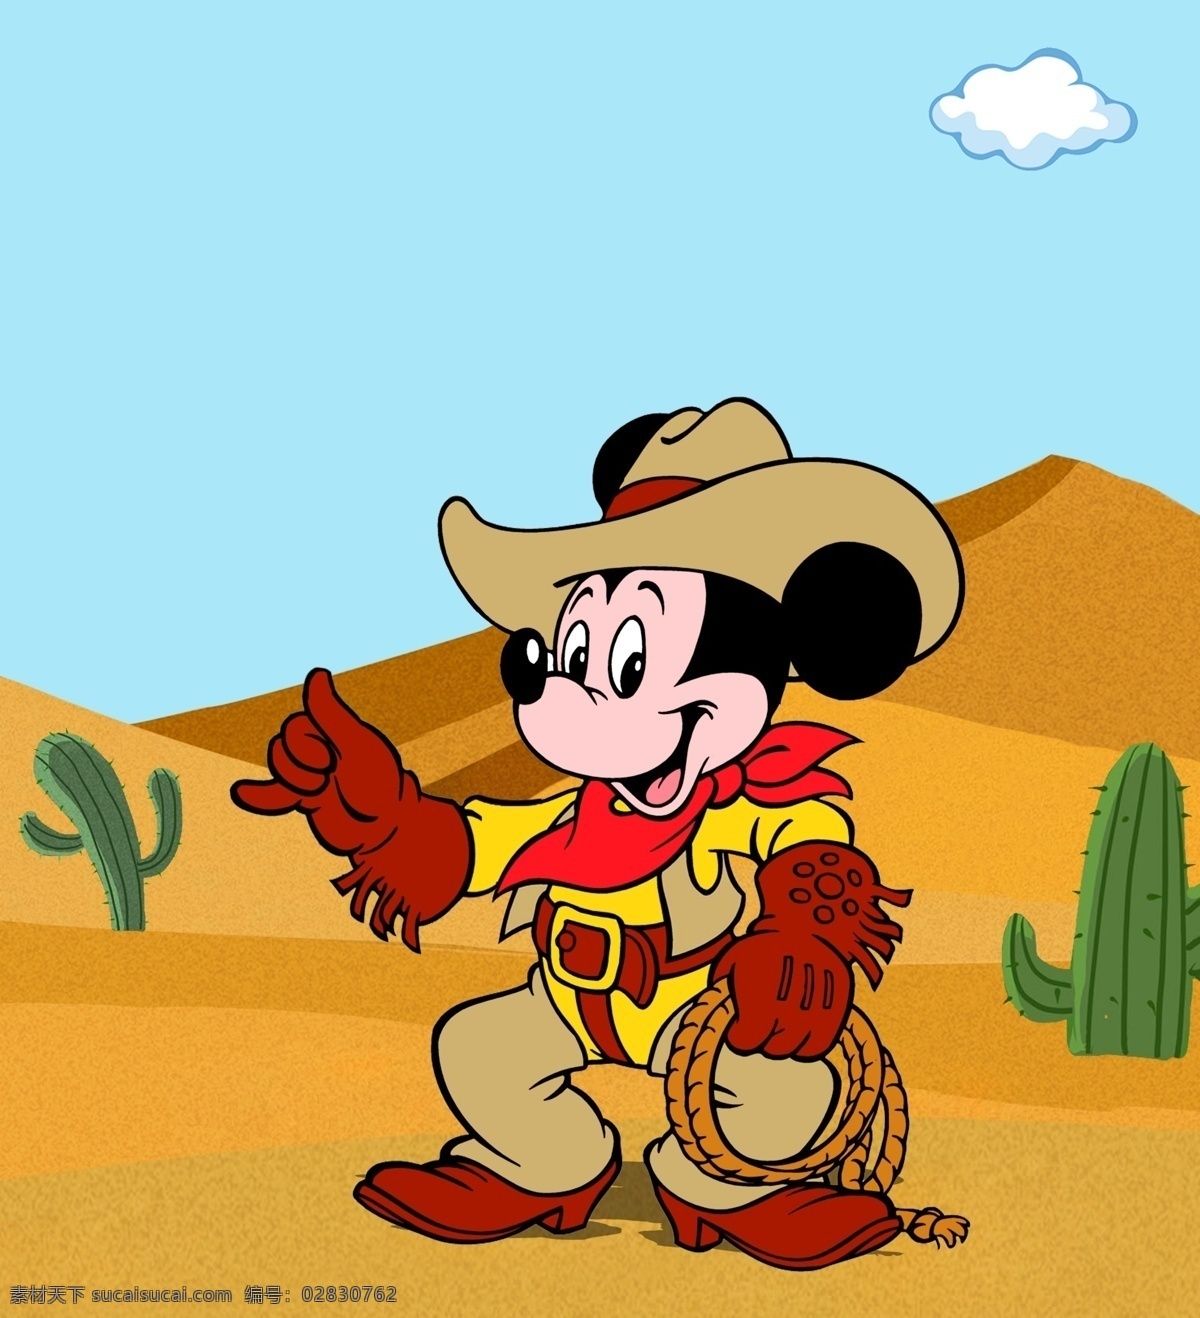 米老鼠 卡通 牛仔 沙漠 仙人掌 动漫动画 动漫人物